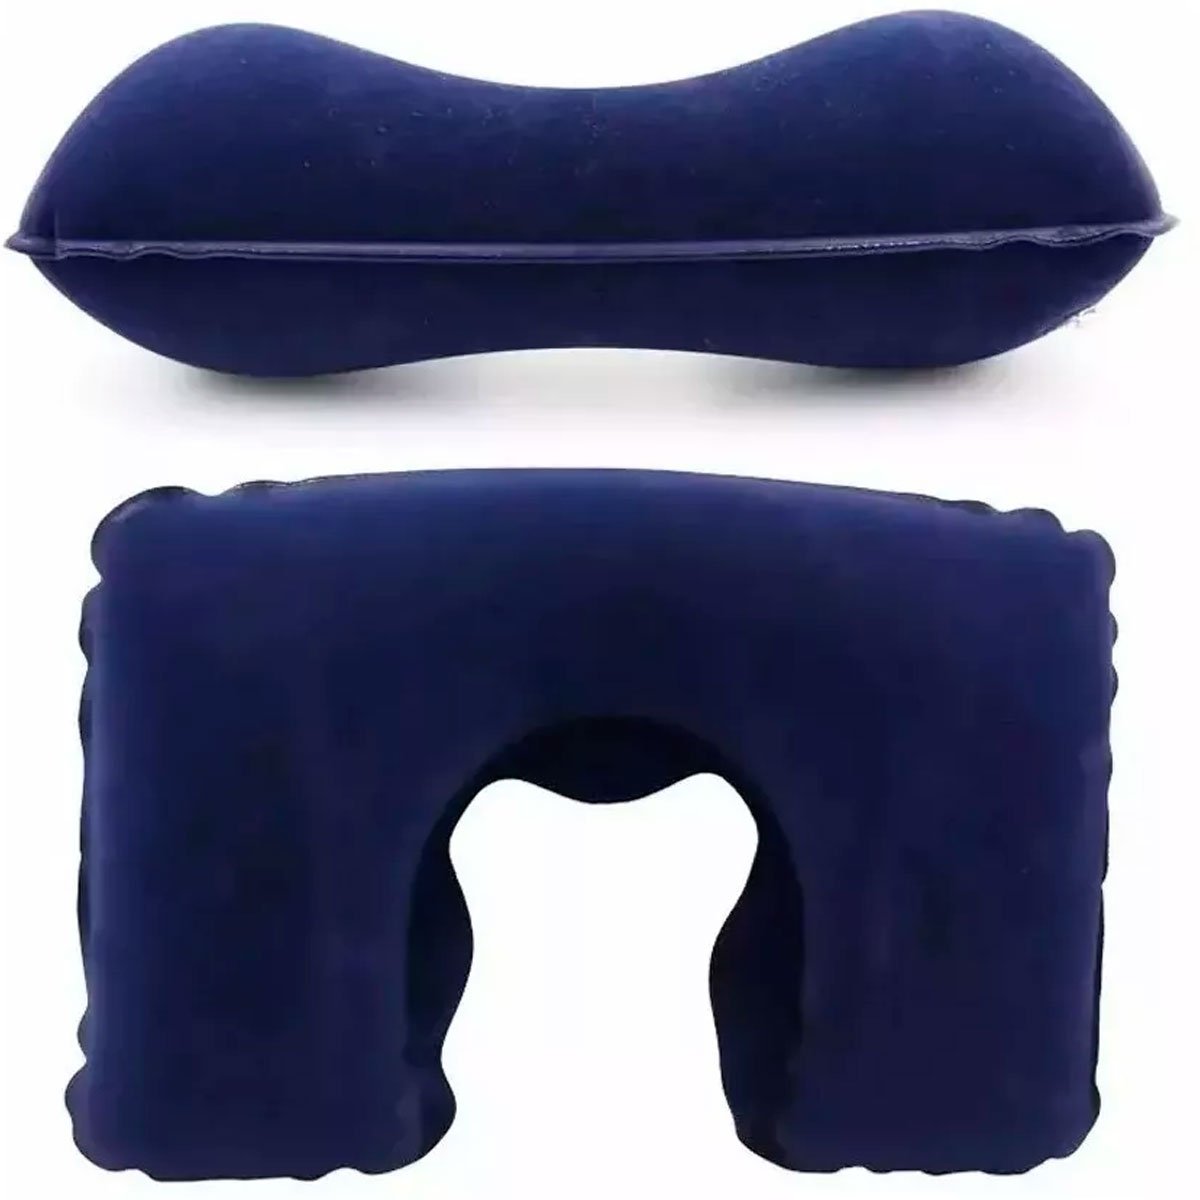 04 travesseiro almofada inflavel para pescoco